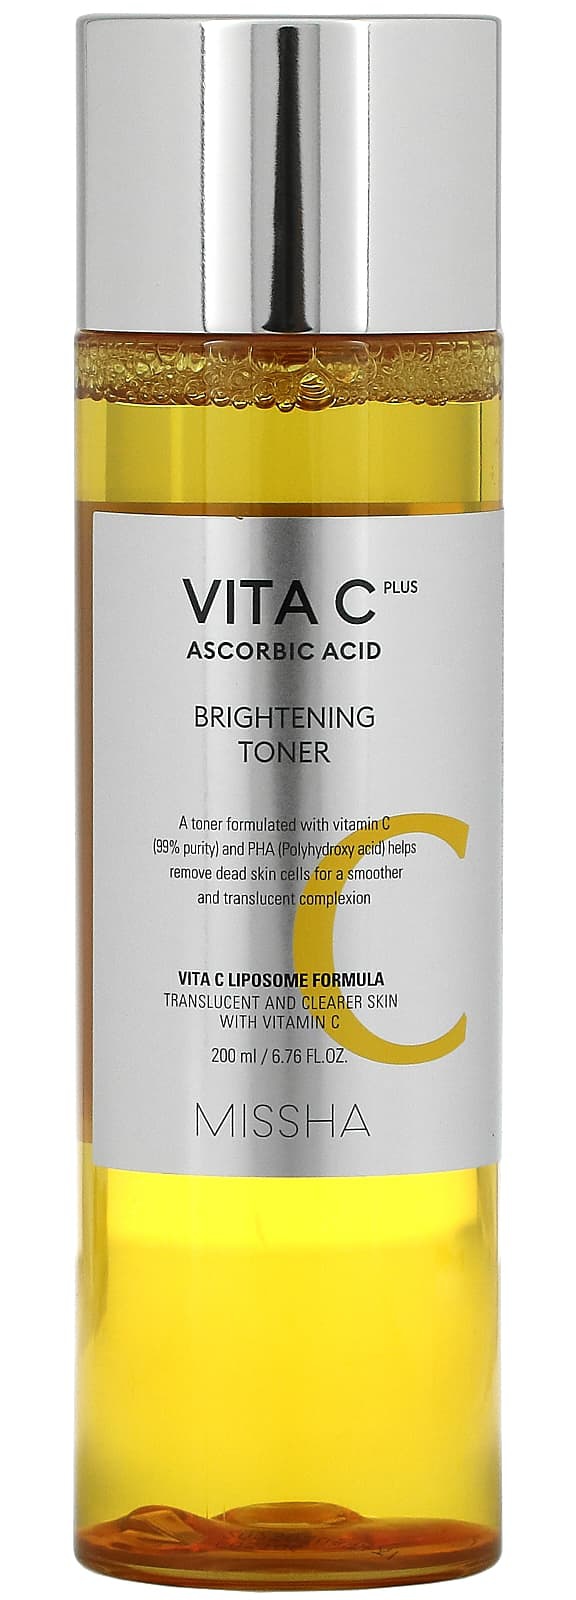 Missha Vita C Plus Ascorbic Acid, Brightening Toner